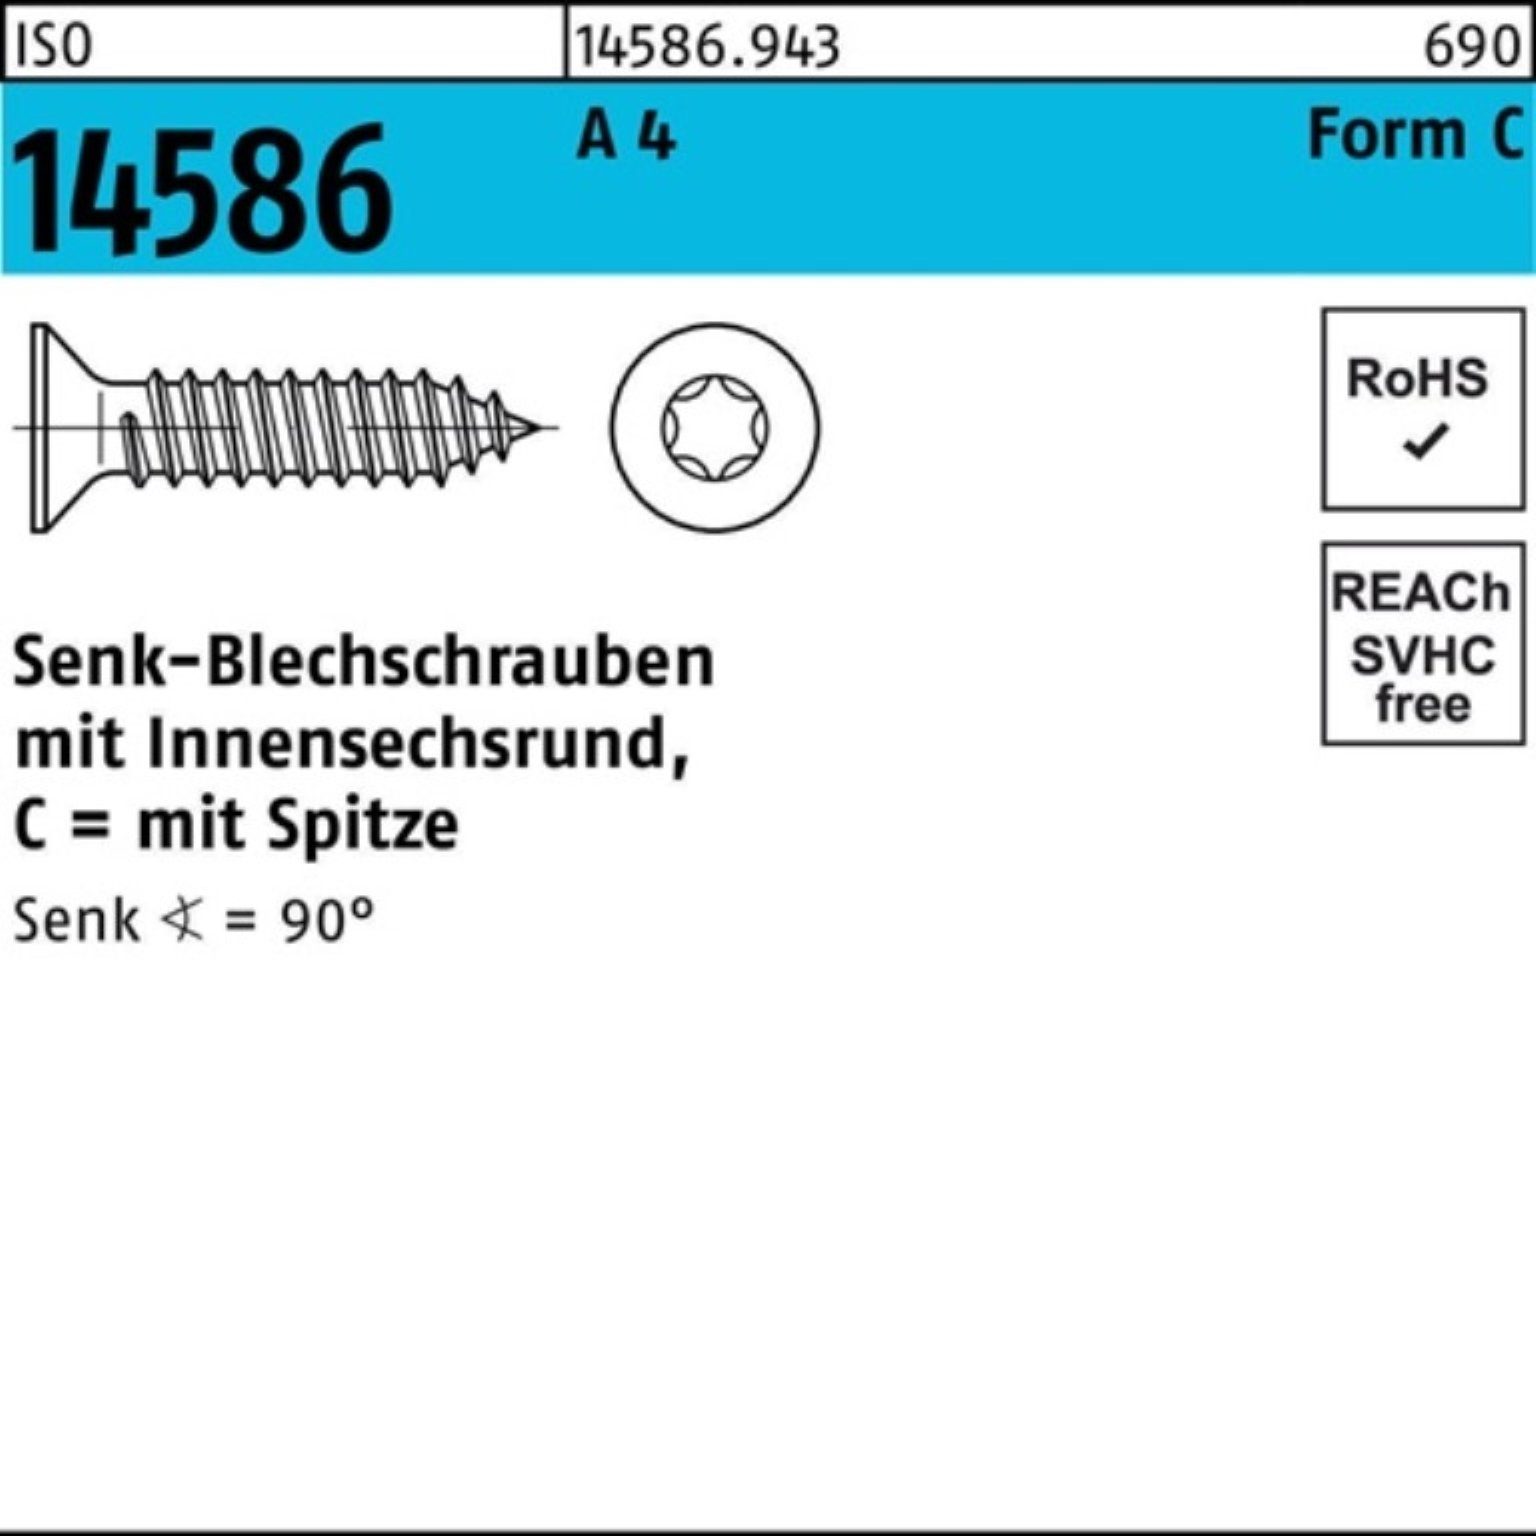 ISO 1000er 2,9x A Schraube Reyher 4 ISR/Spitze Pack Senkblechschraube 100 19-T10 14586